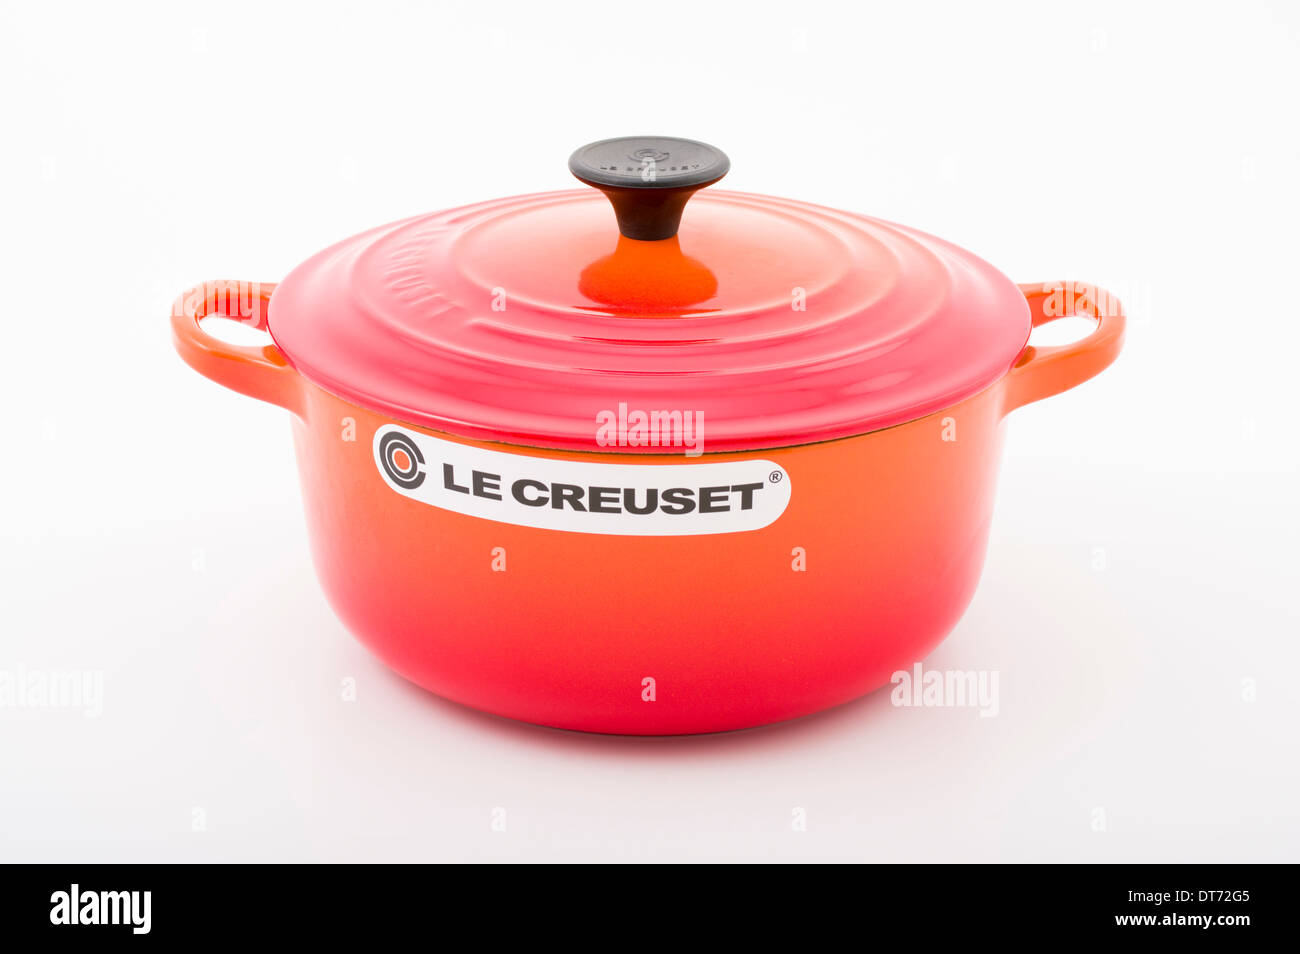 https://c8.alamy.com/comp/DT72G5/le-creuset-cast-iron-cast-iron-french-cookware-with-orange-enamel-DT72G5.jpg